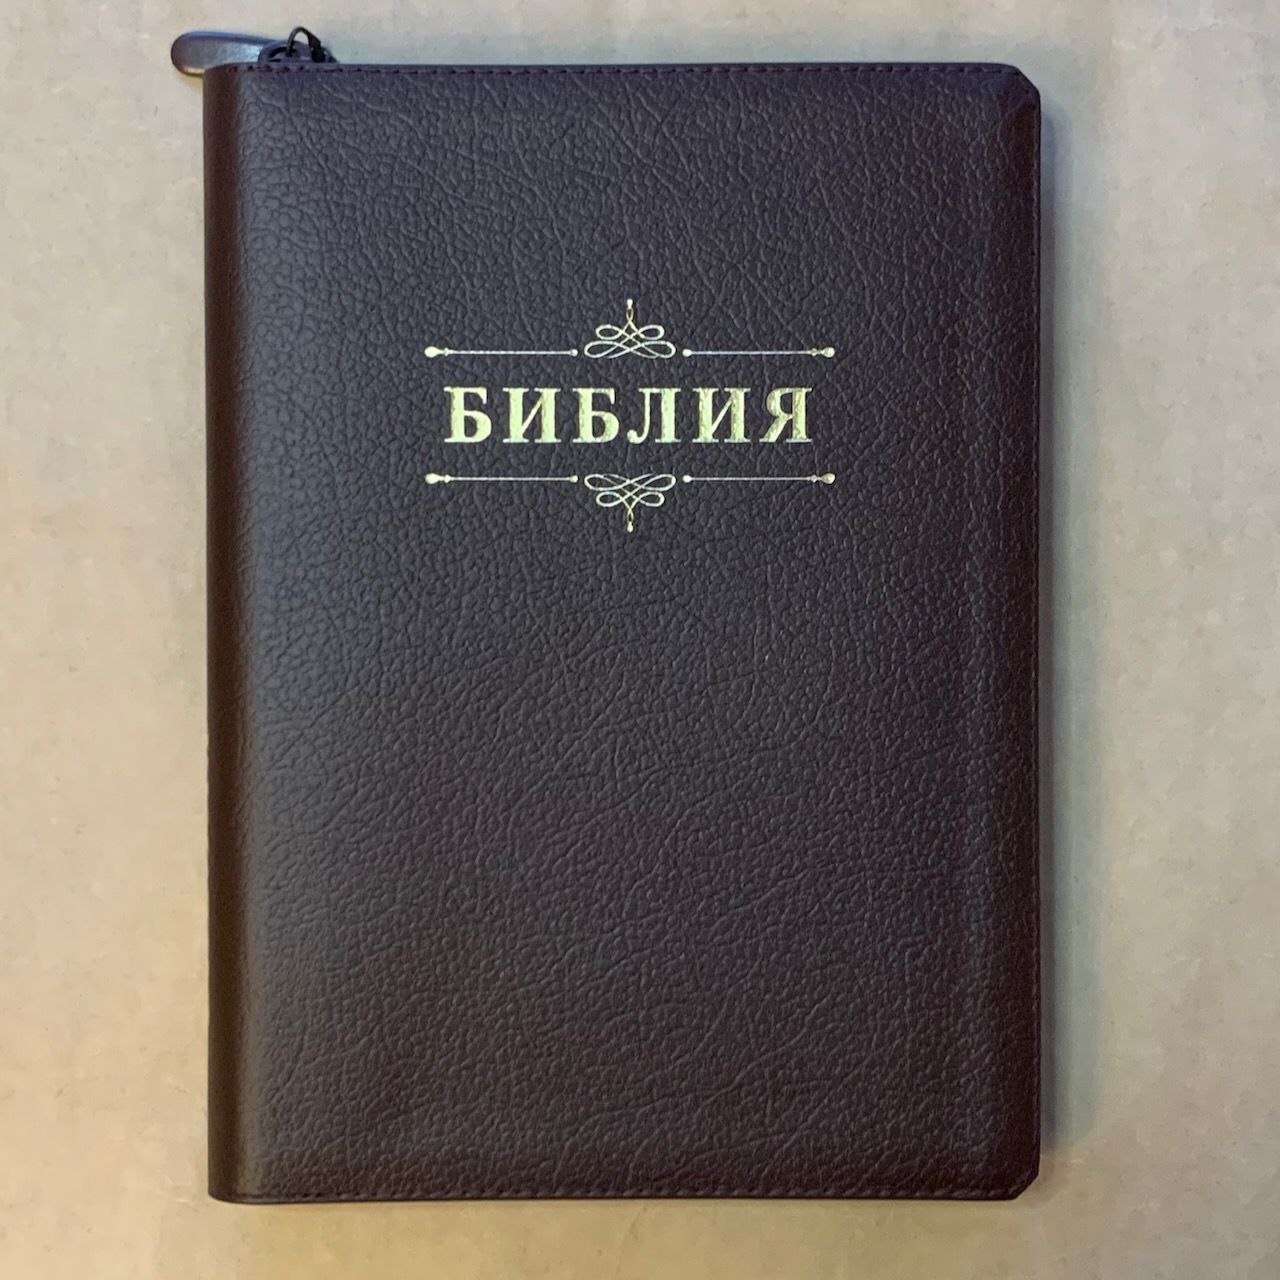 Библия 076zti код C4, дизайн "слово Библия", кожаный переплет на молнии с индексами, цвет коричневый пятнистый, размер 180x243 мм